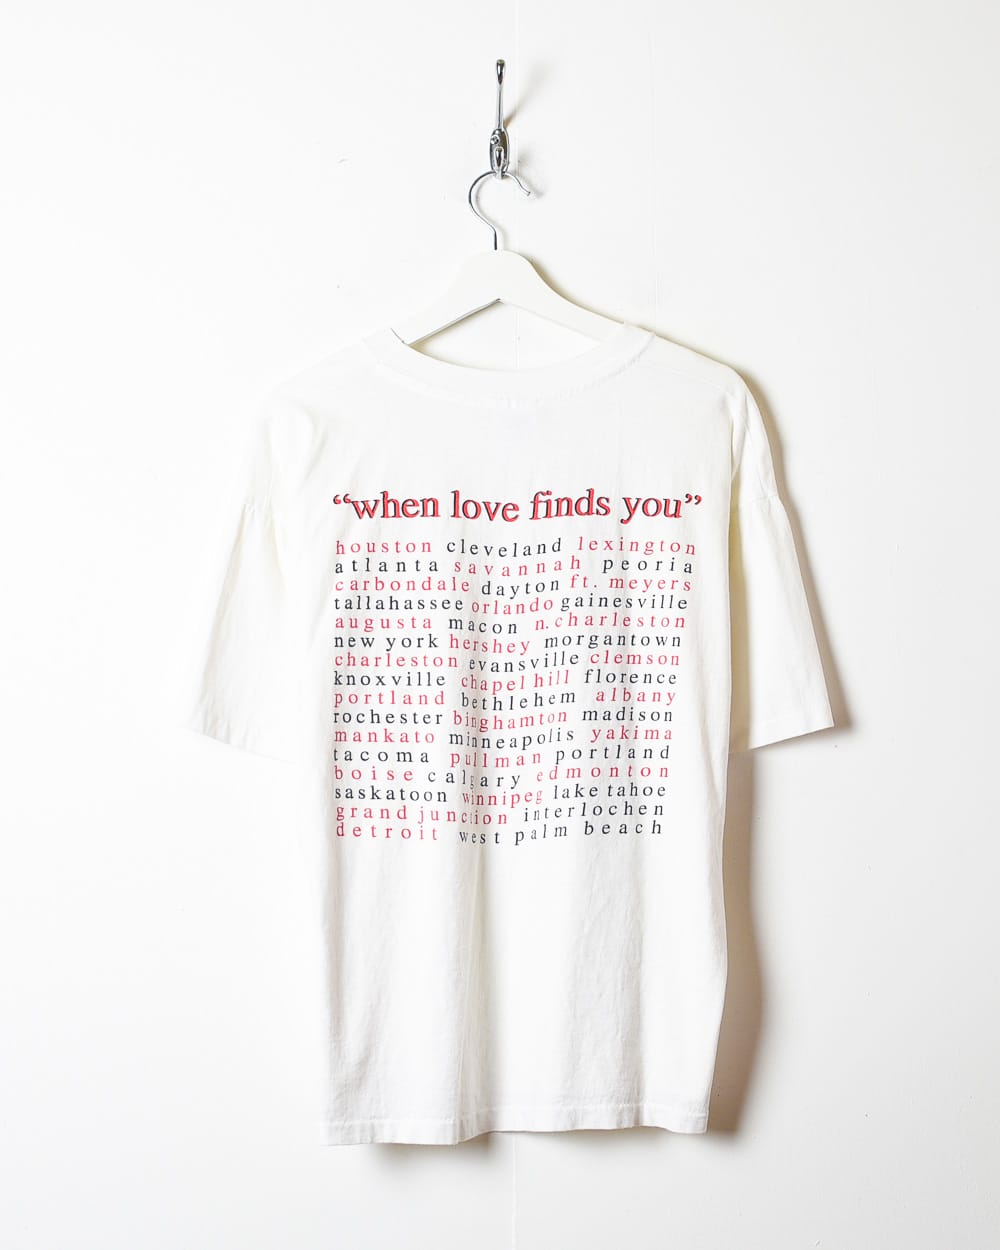 Vintage 90s White Vince Gill Tour 1995 Single Stitch T-Shirt